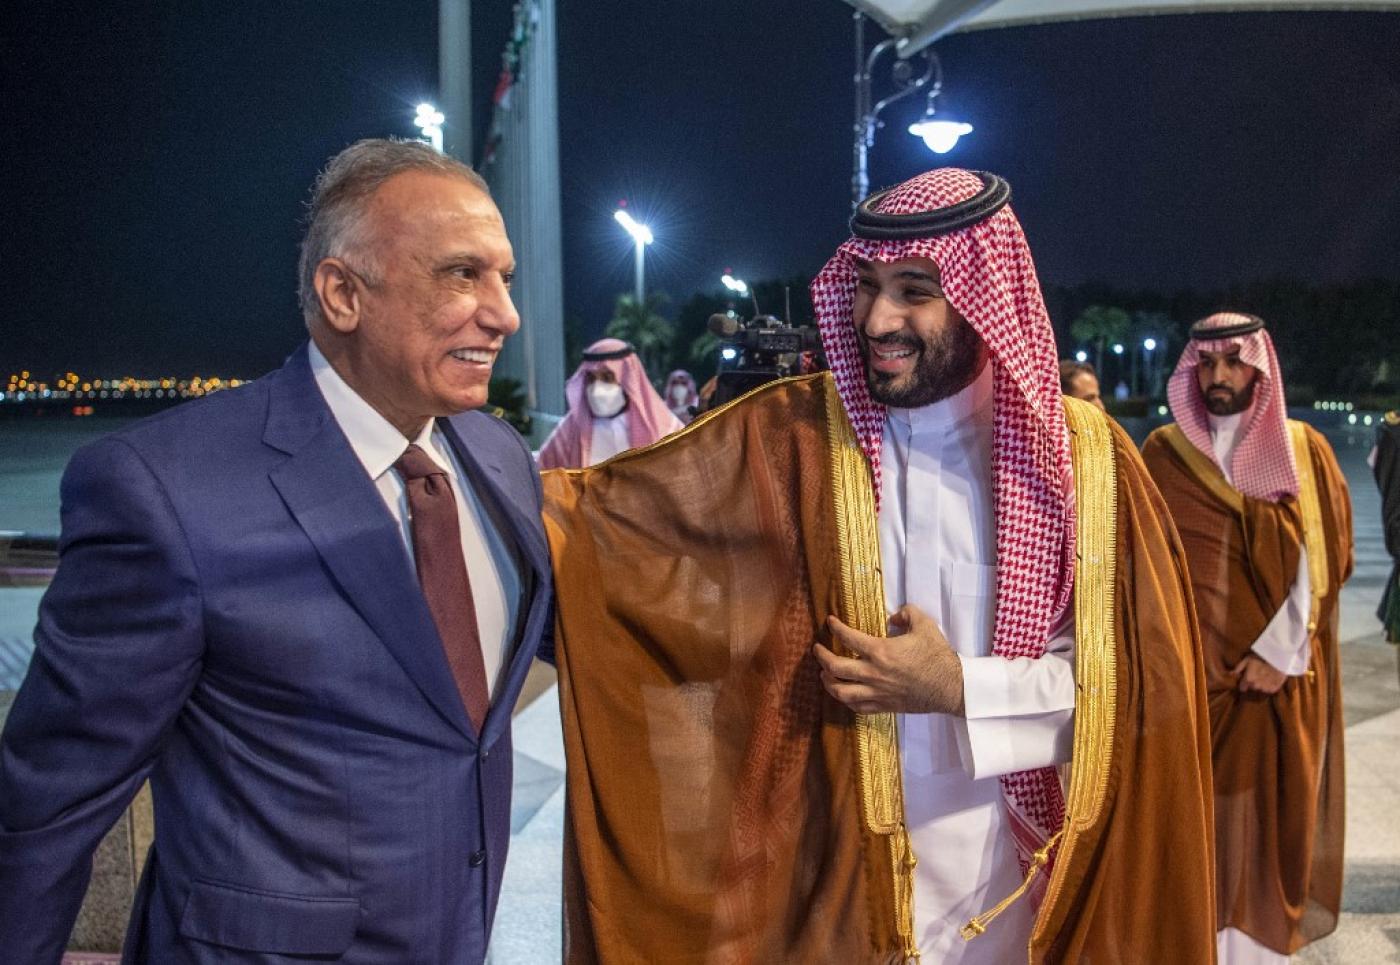 Iraq PM visits Saudi Arabia to mediate talks between Riyadh and Iran